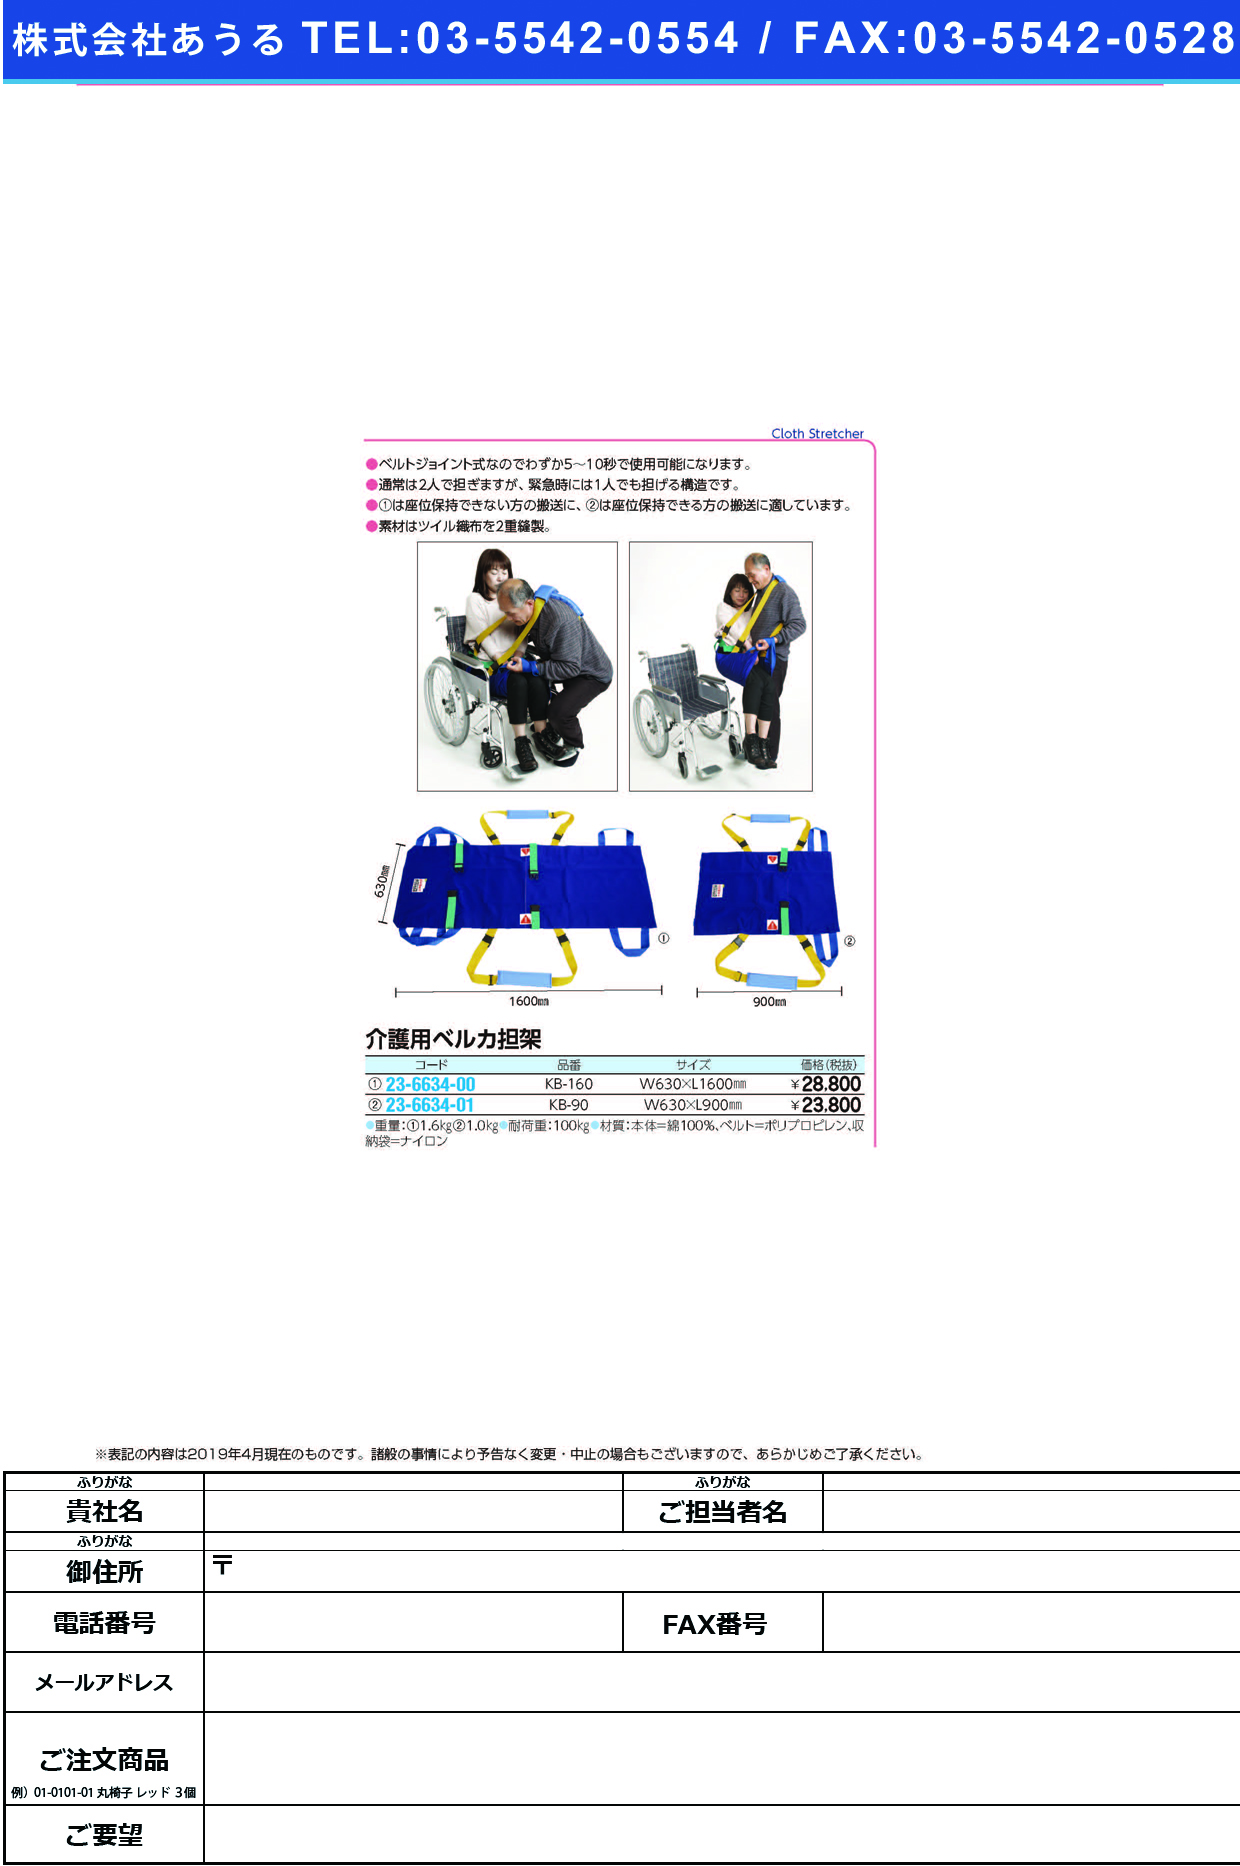 (23-6634-01)ベルカワンタッチ式介護担架 KB-90 ﾍﾞﾙｶﾜﾝﾀｯﾁｼｷｶｲｺﾞﾀﾝｶ【1枚単位】【2019年カタログ商品】